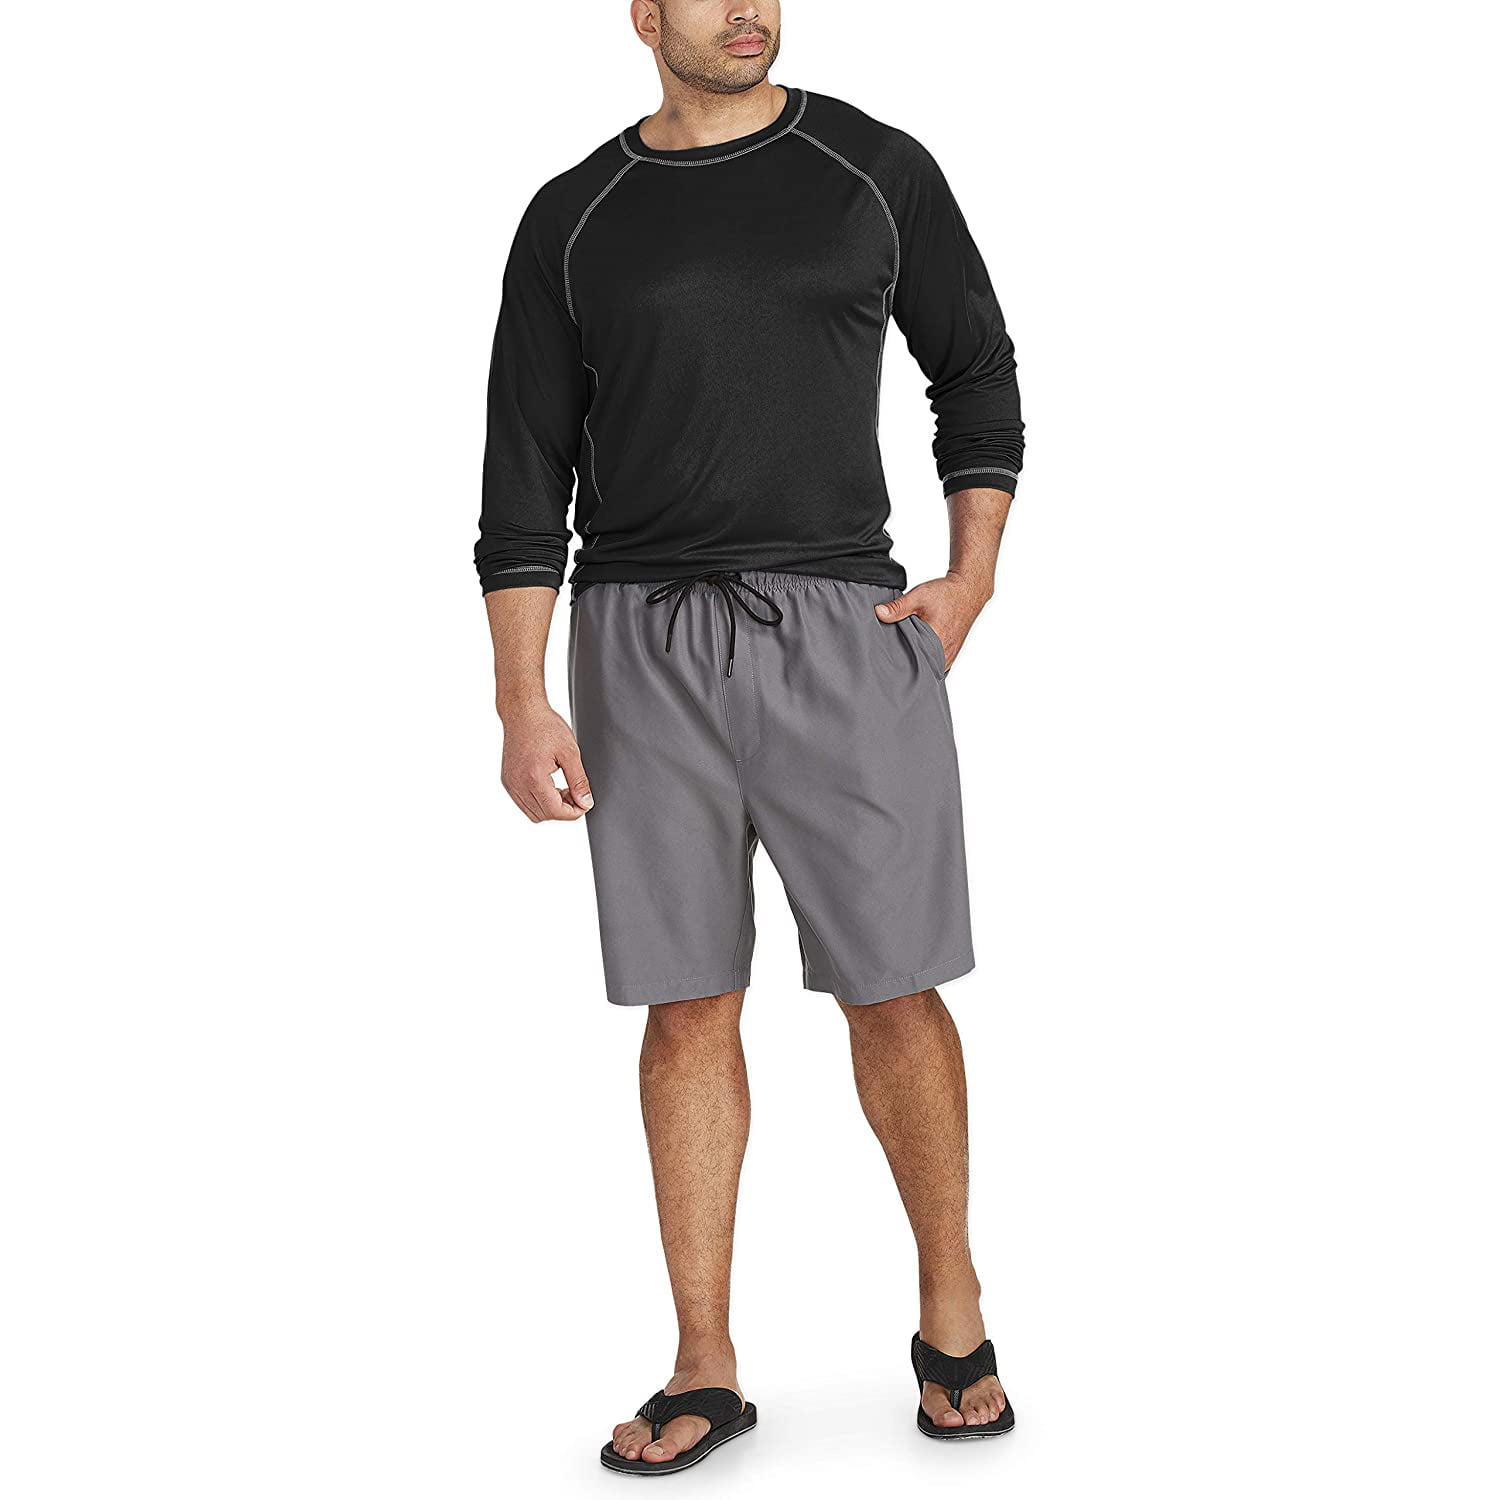 Essentials Mens Big & Tall Quick-Dry Swim Trunk Fit by DXL Swim Trunks